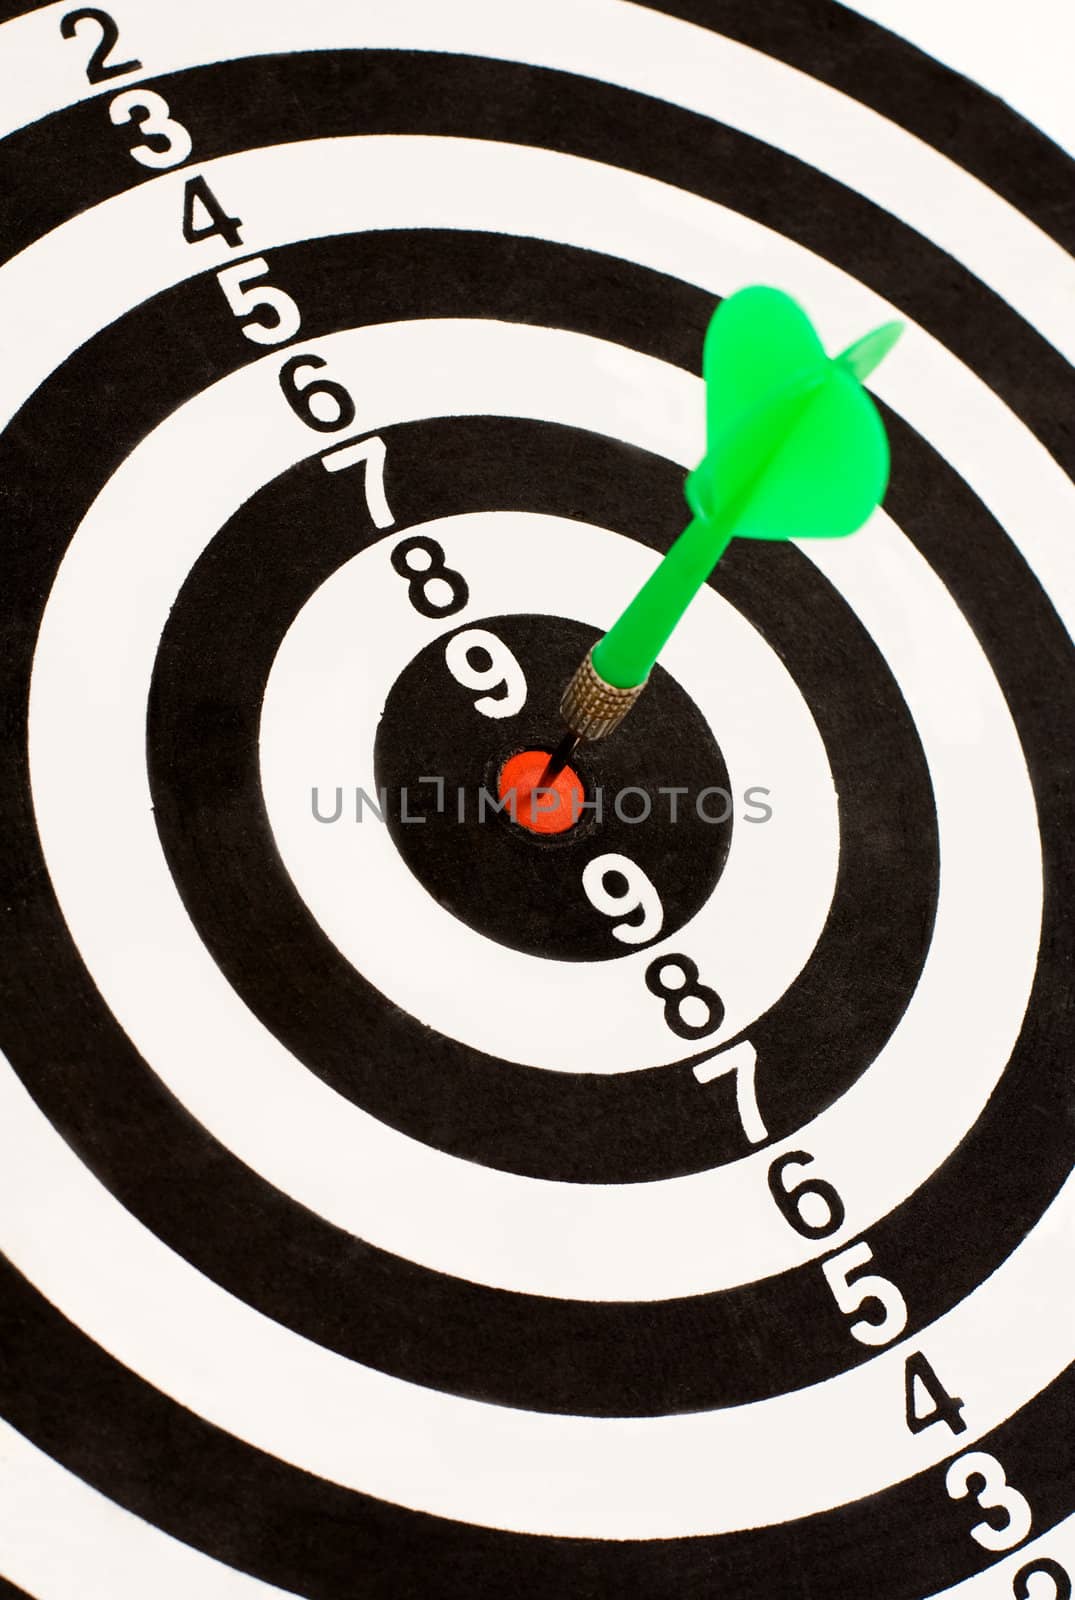 Green dart stuck in the center